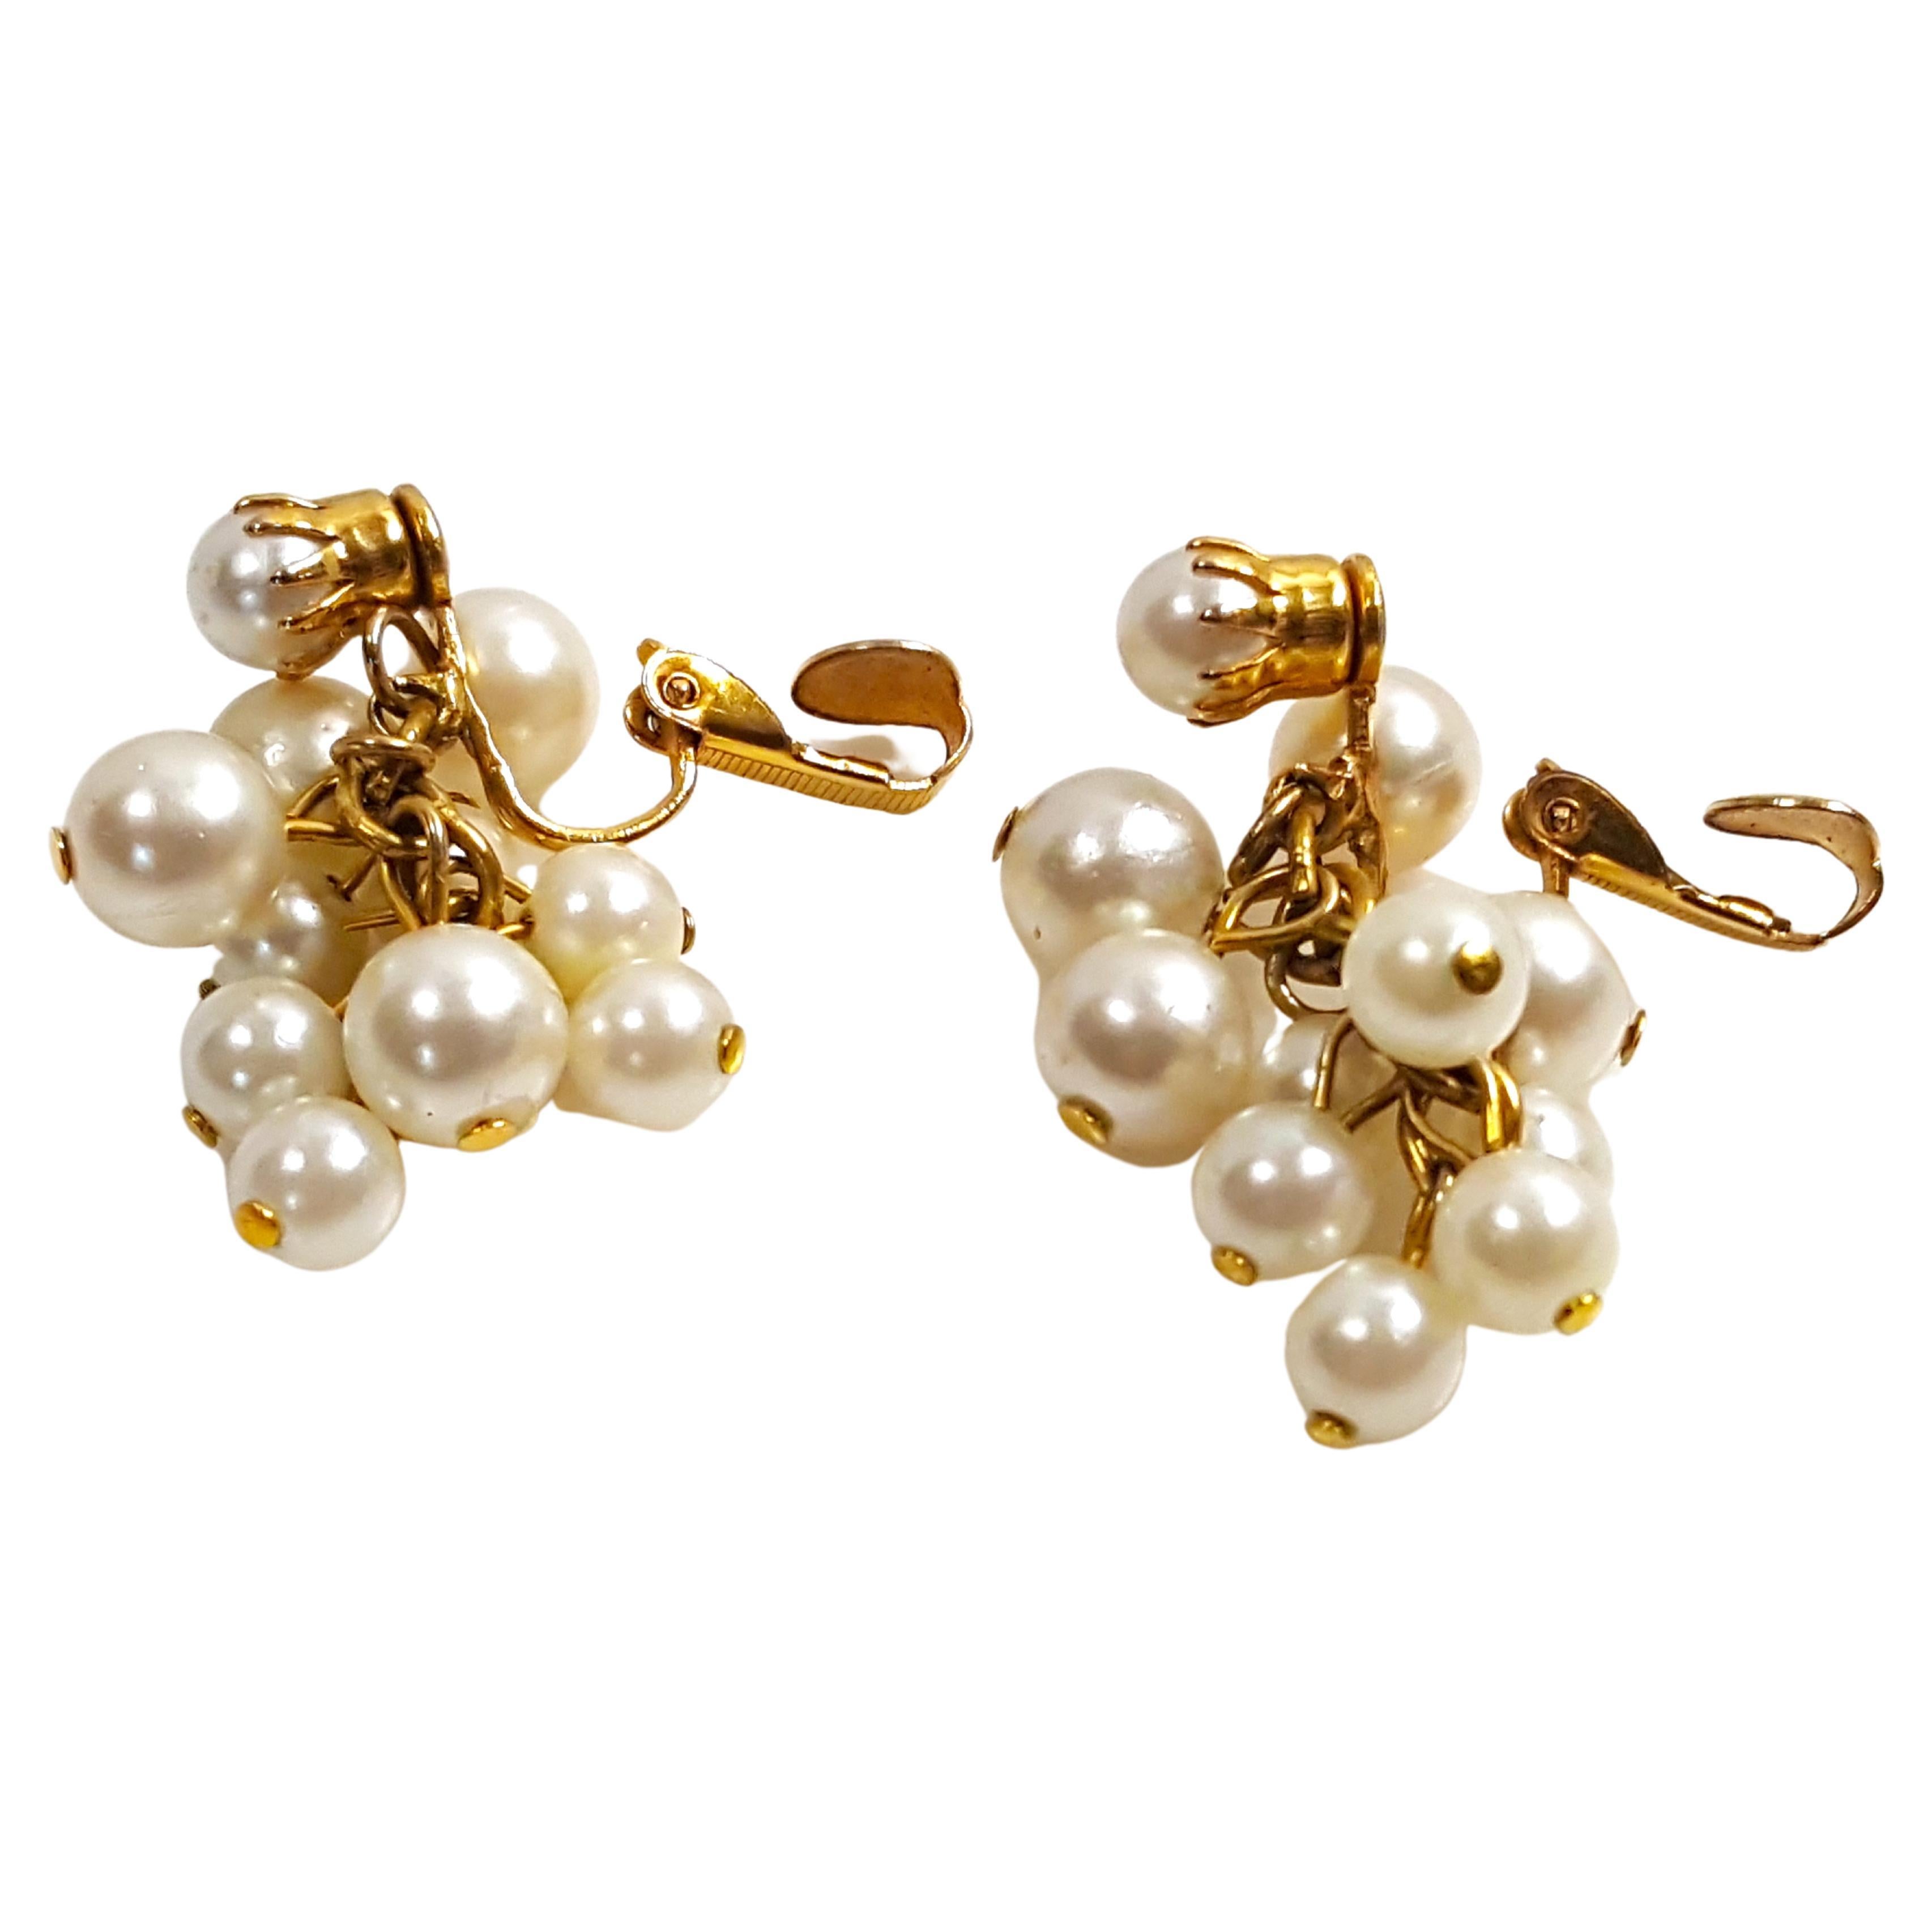 Le premier designer de Miriam Haskell depuis 1926, Frank HESS, a créé dans un style baroque ces boucles d'oreilles pendantes en forme de grappe et de cascade, réalisées à la main, qui présentent des fausses perles rondes écrues à verre enduit, dont